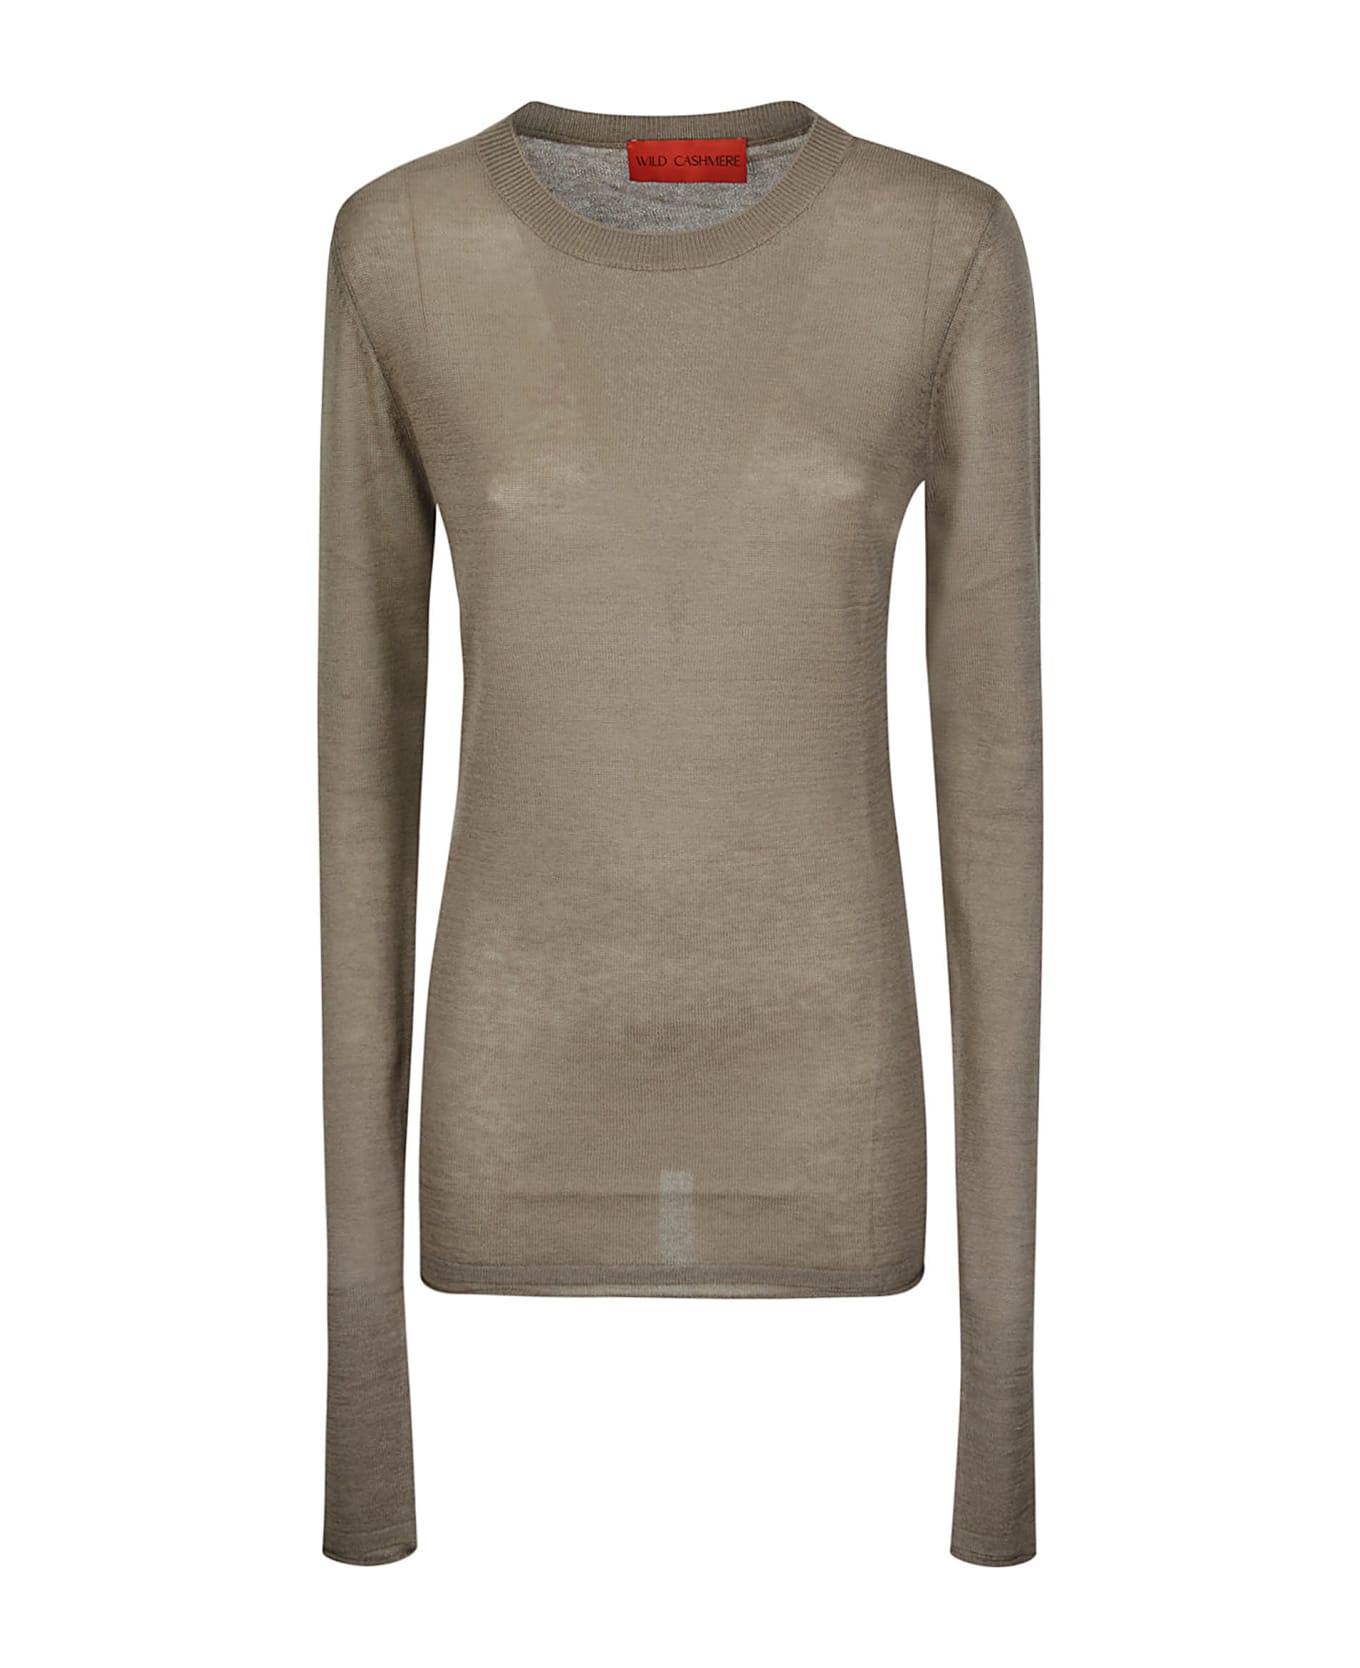 Wild Cashmere Extra Long Sleeve G/neck Sweater - 190 ニットウェア